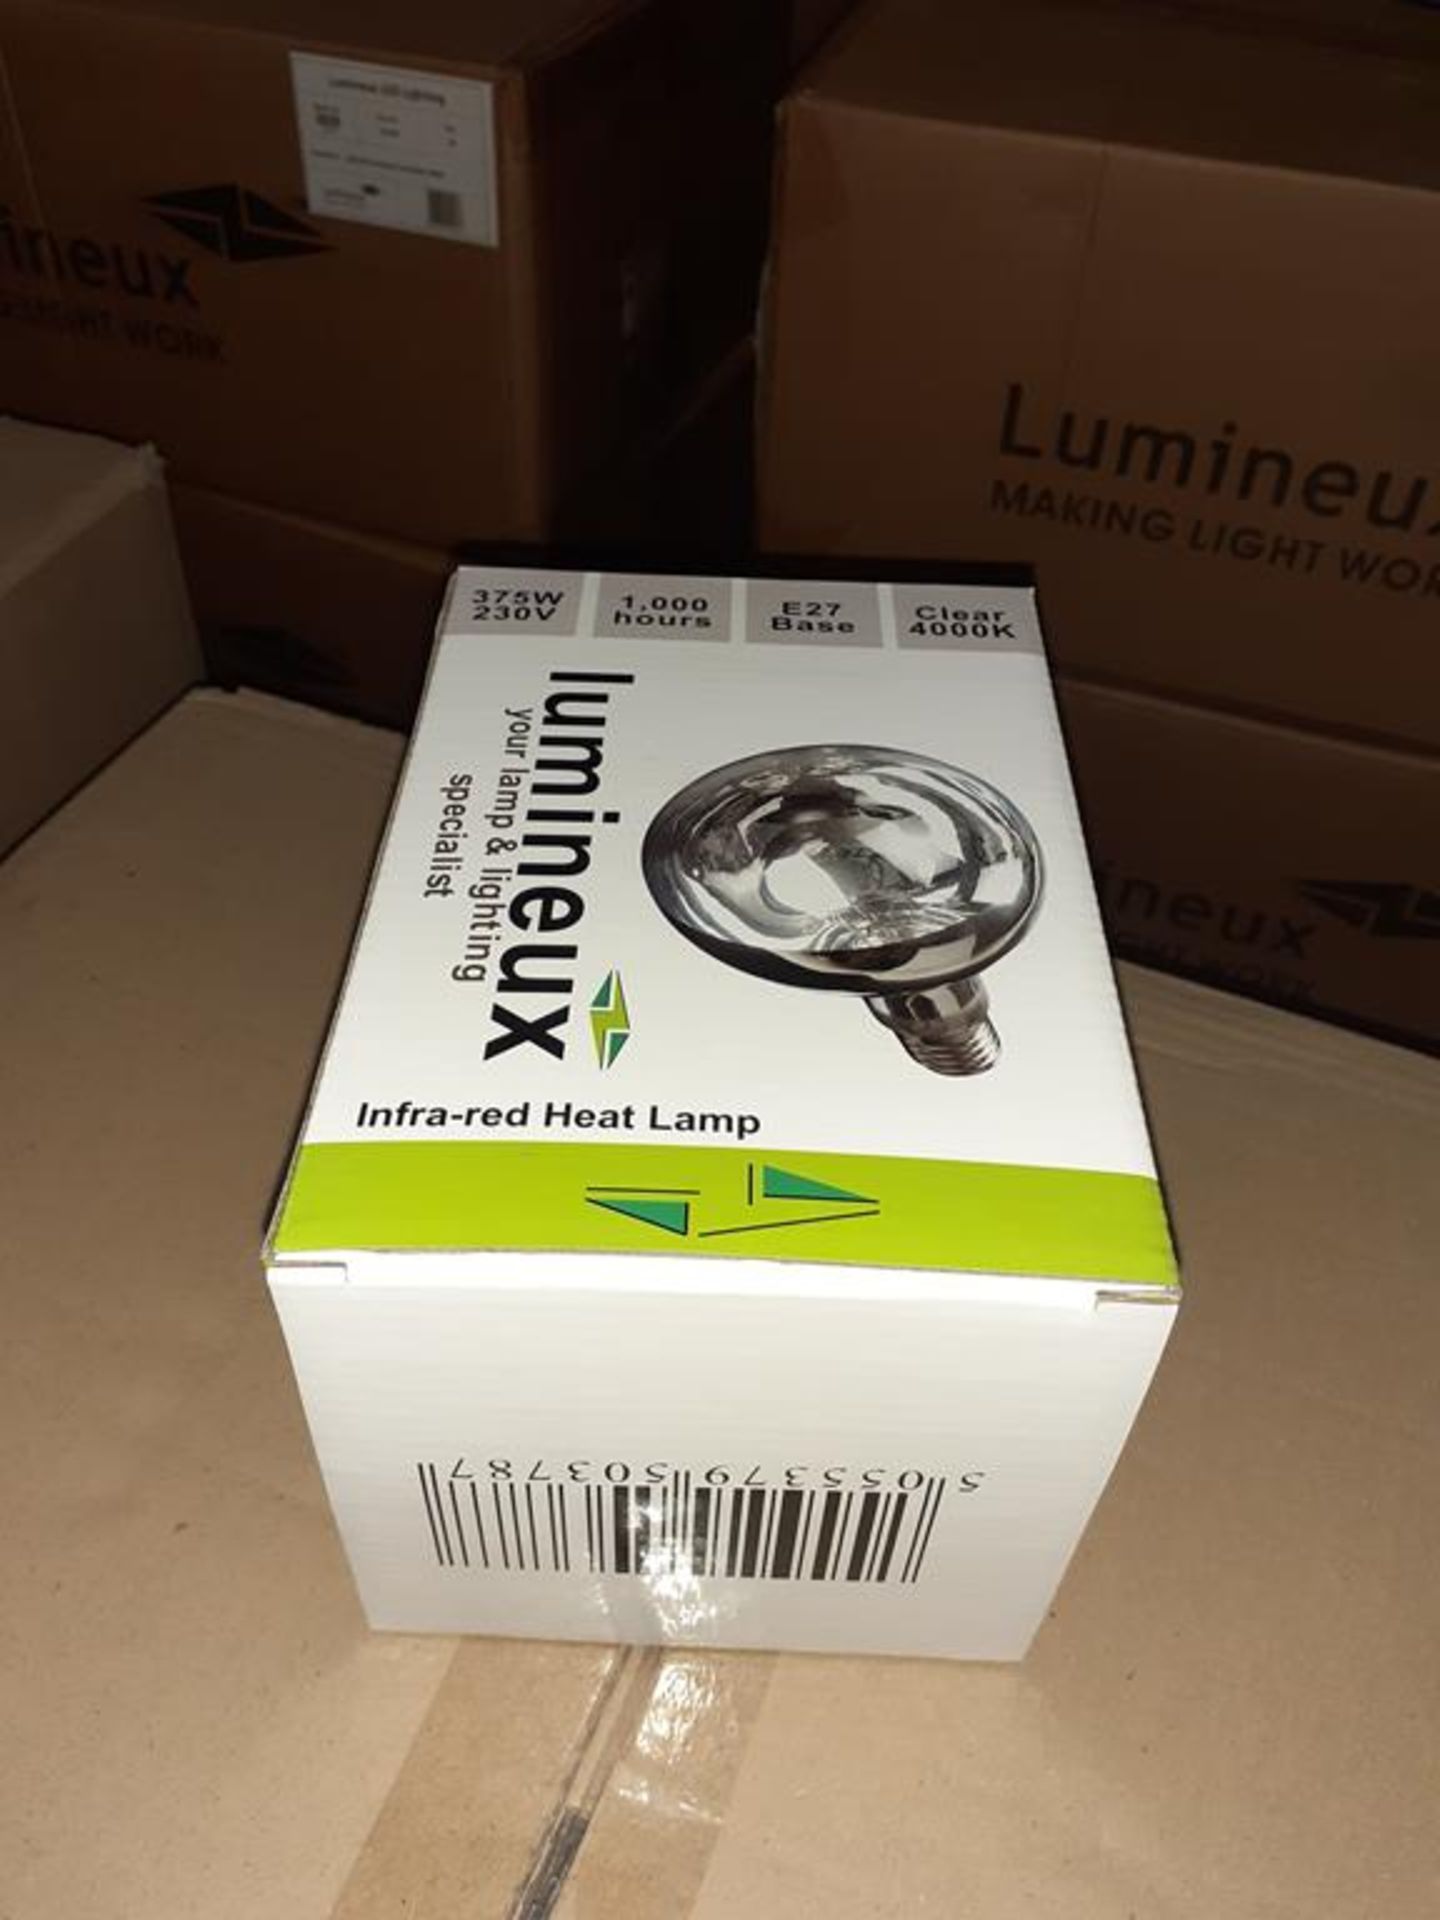 40 x Infrared Heat Lamp E27 4000K 375W 230V OEM Trade Price £ 1150 - Image 3 of 3